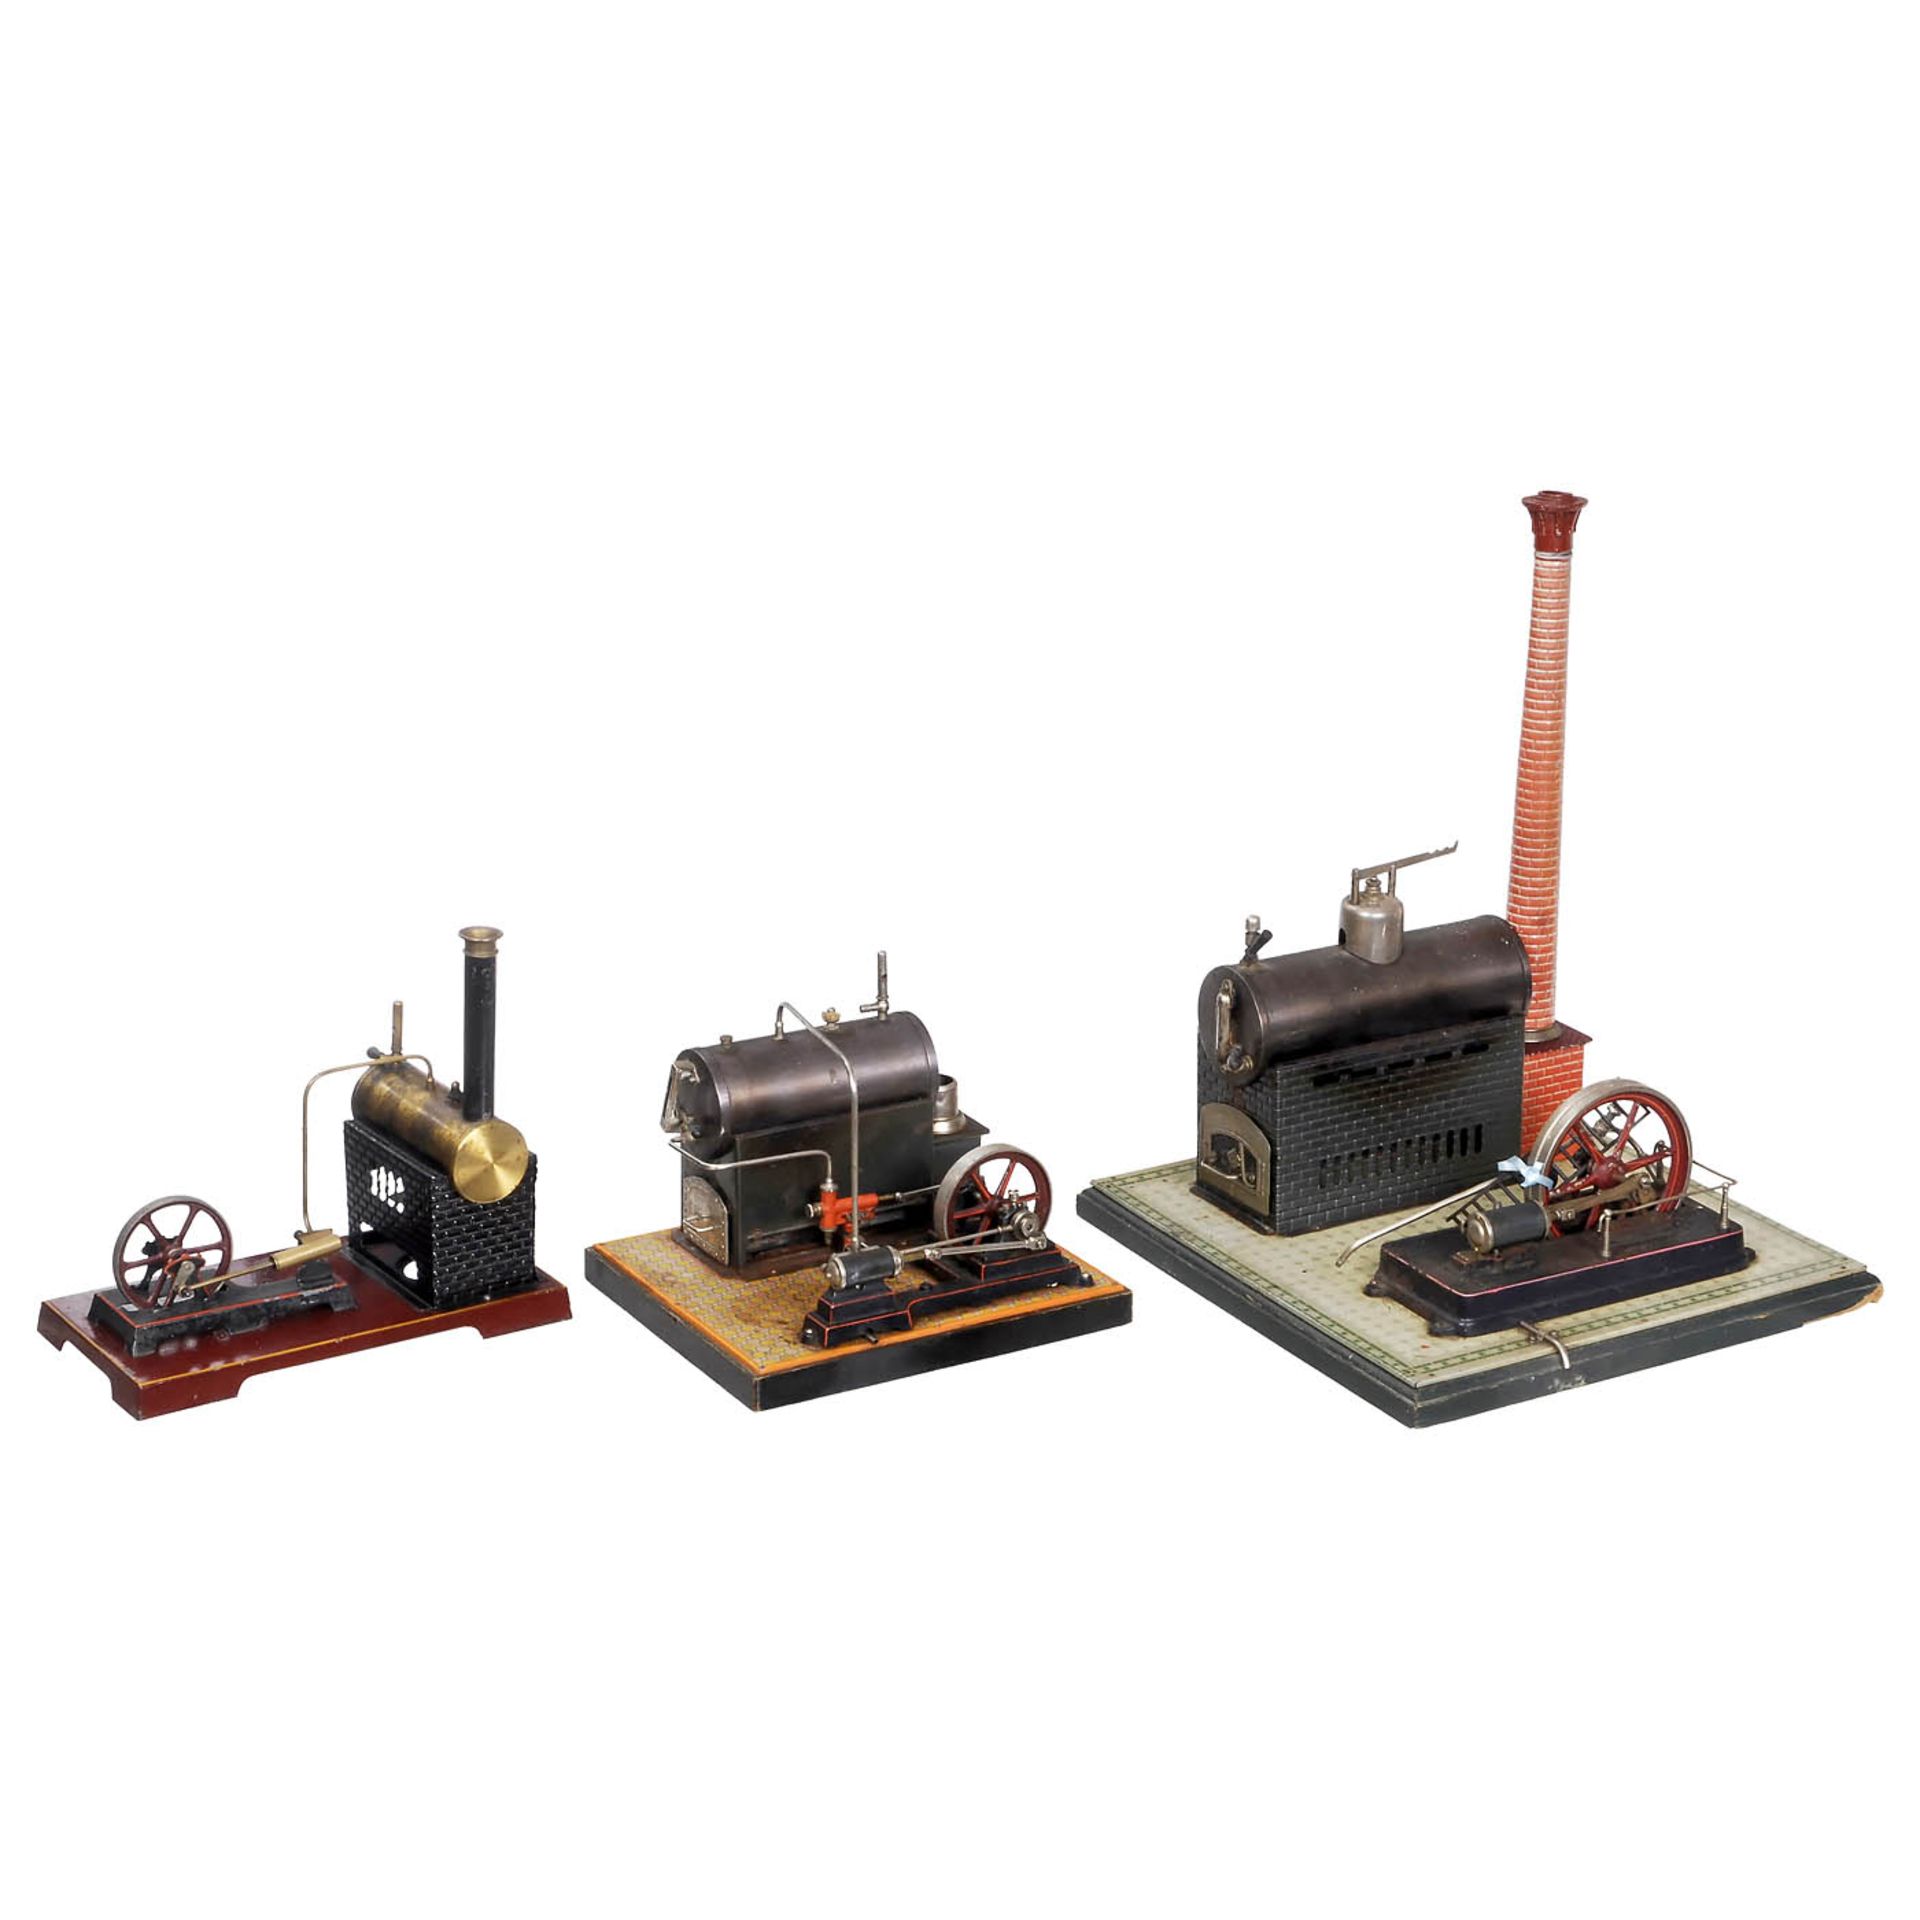 6 liegende Dampfmaschinen 1) Gebrüder Bing, Modell 130/280, um 1912, Holzfundament, Blechplatte - Image 3 of 3